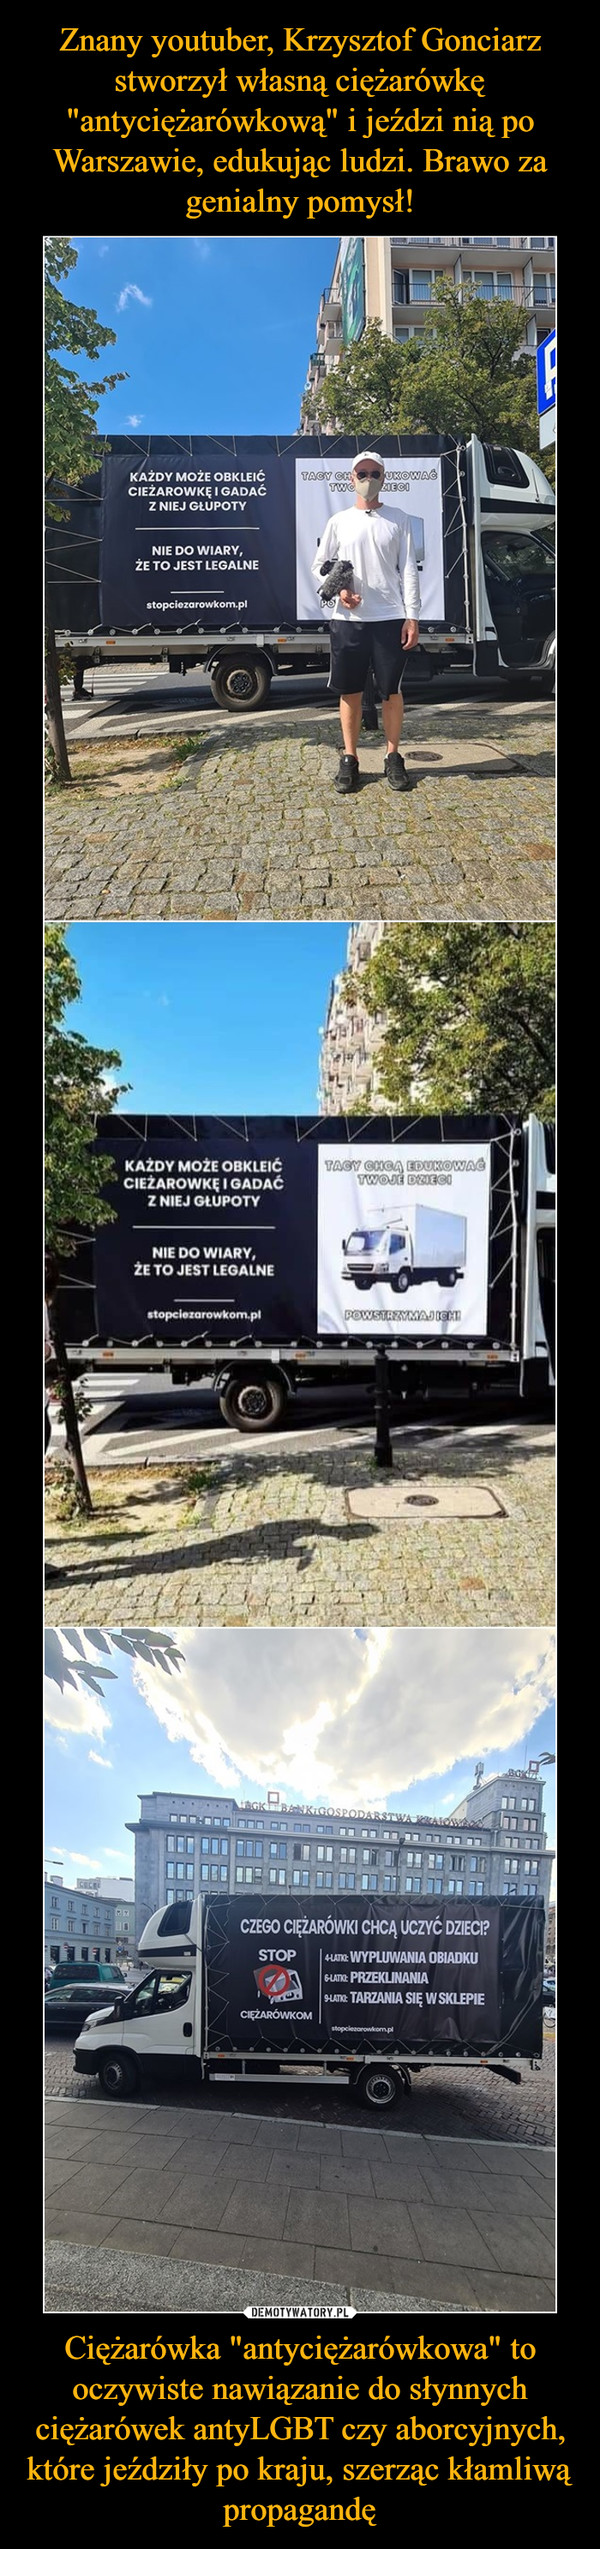 Znany youtuber, Krzysztof Gonciarz stworzył własną ciężarówkę "antyciężarówkową" i jeździ nią po Warszawie, edukując ludzi. Brawo za genialny pomysł! Ciężarówka "antyciężarówkowa" to oczywiste nawiązanie do słynnych ciężarówek antyLGBT czy aborcyjnych, które jeździły po kraju, szerząc kłamliwą propagandę